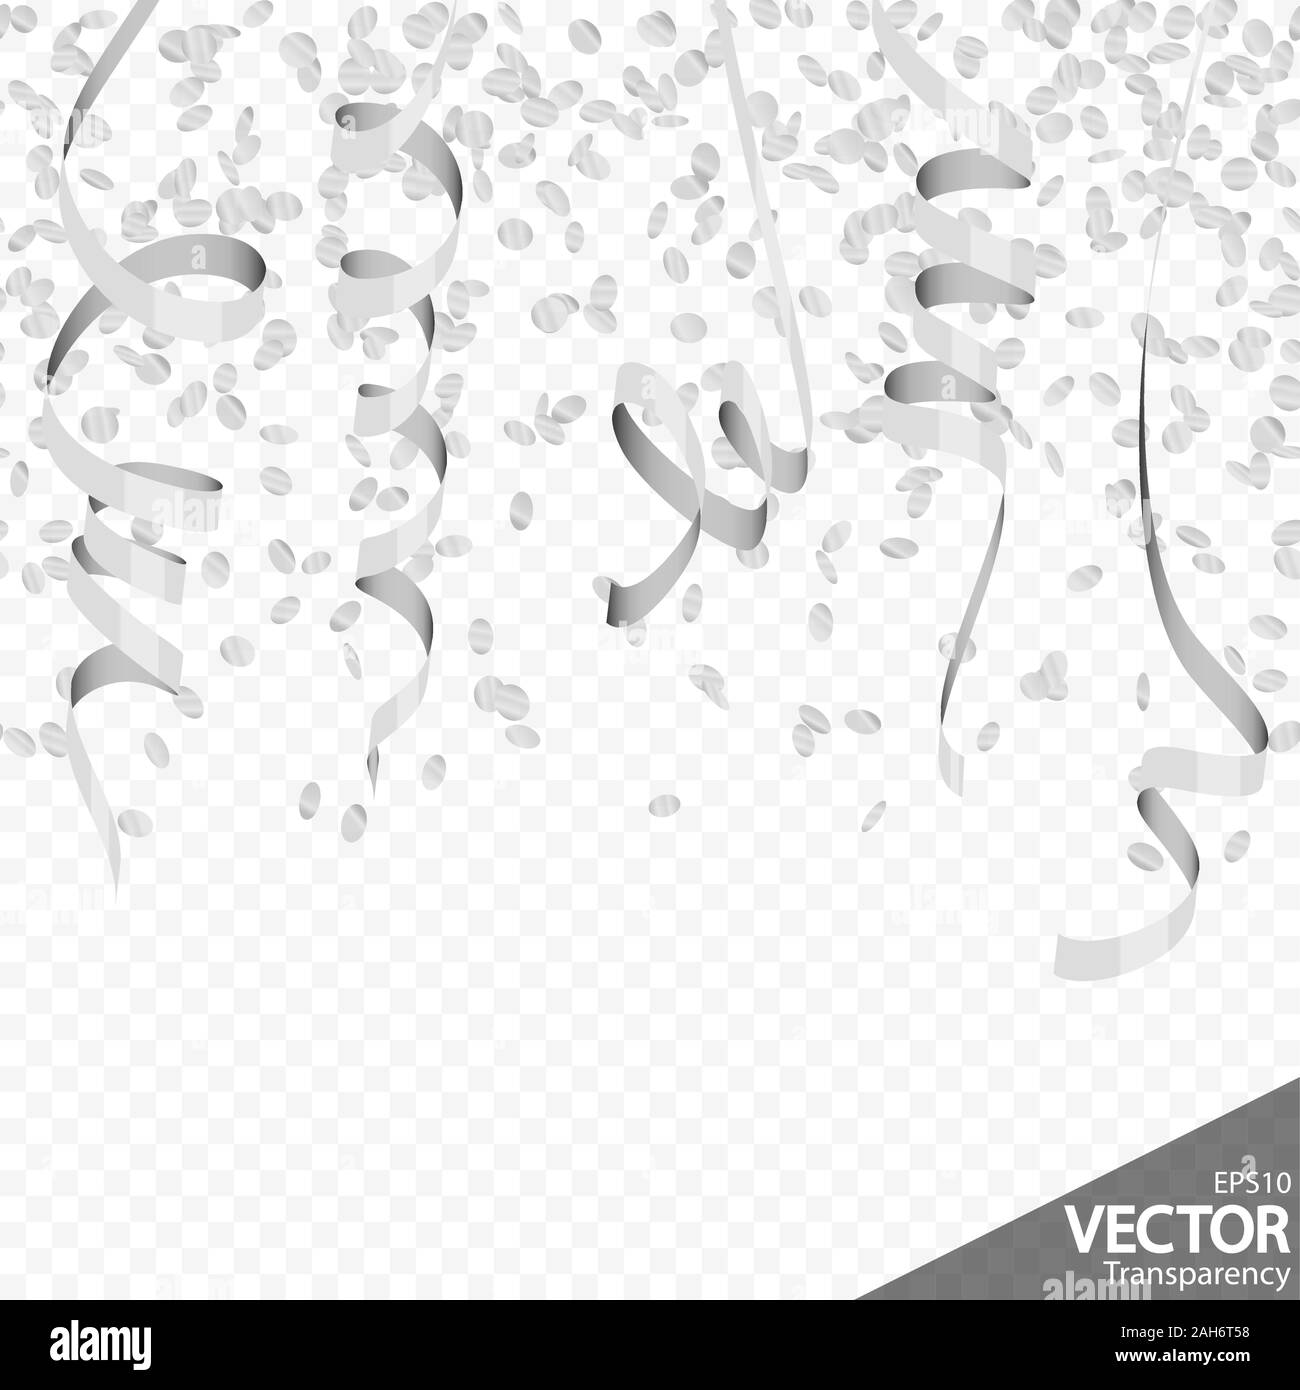 Silver Streamer Stock Illustration - Download Image Now - Streamer, Silver  Colored, Confetti - iStock